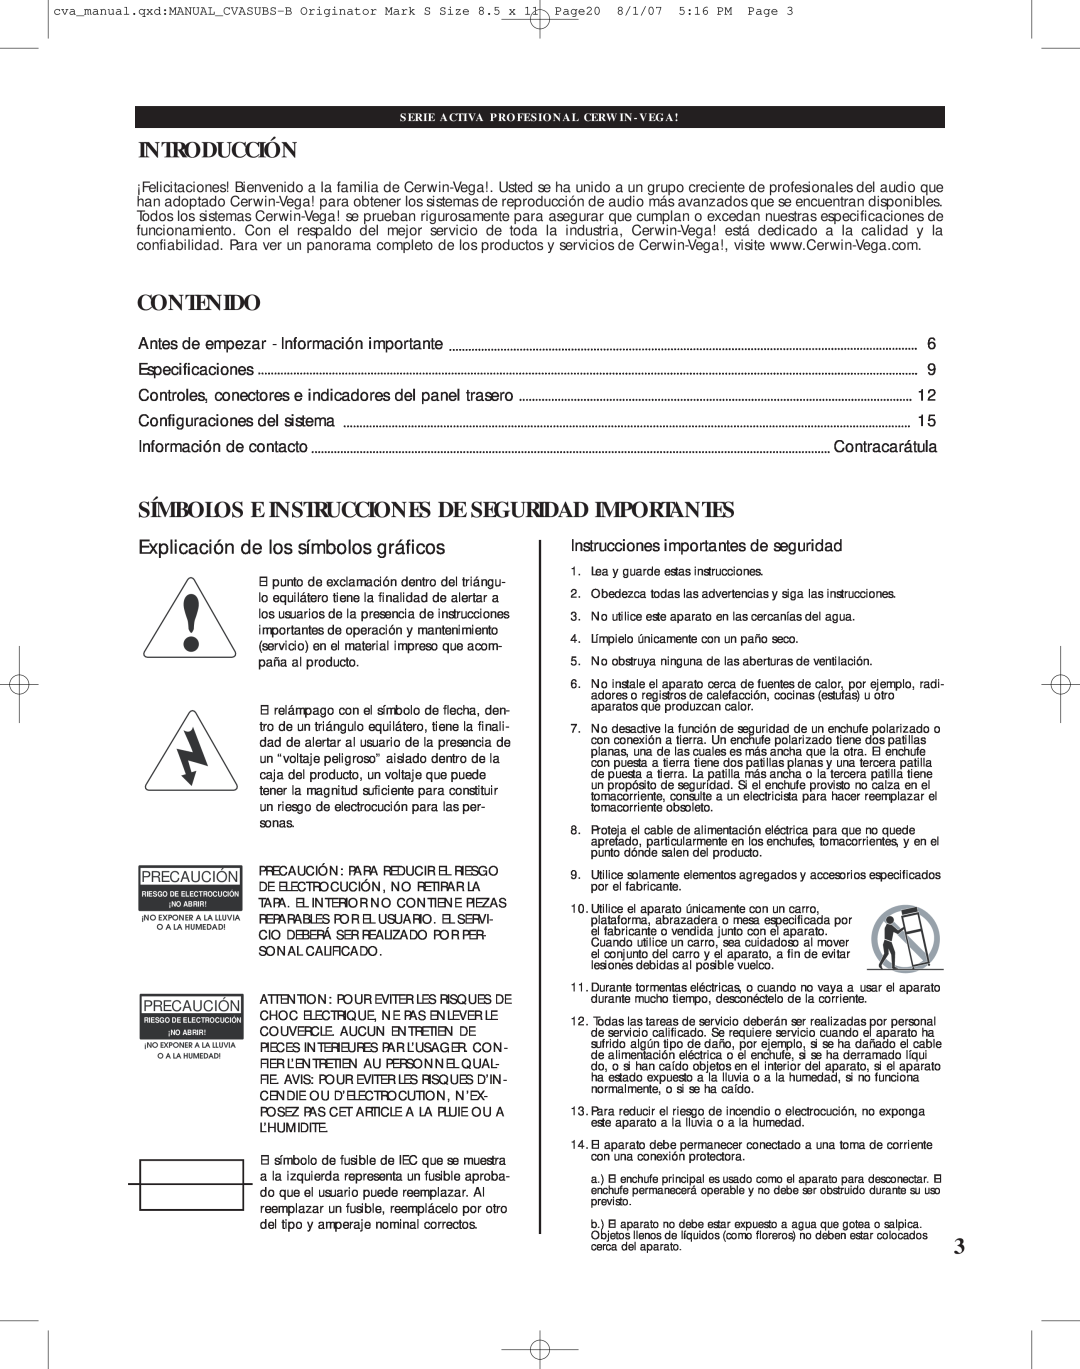 Cerwin-Vega CVA-121, CVA-118 manual Introducción, Contenido, Símbolos E Instrucciones De Seguridad Importantes 